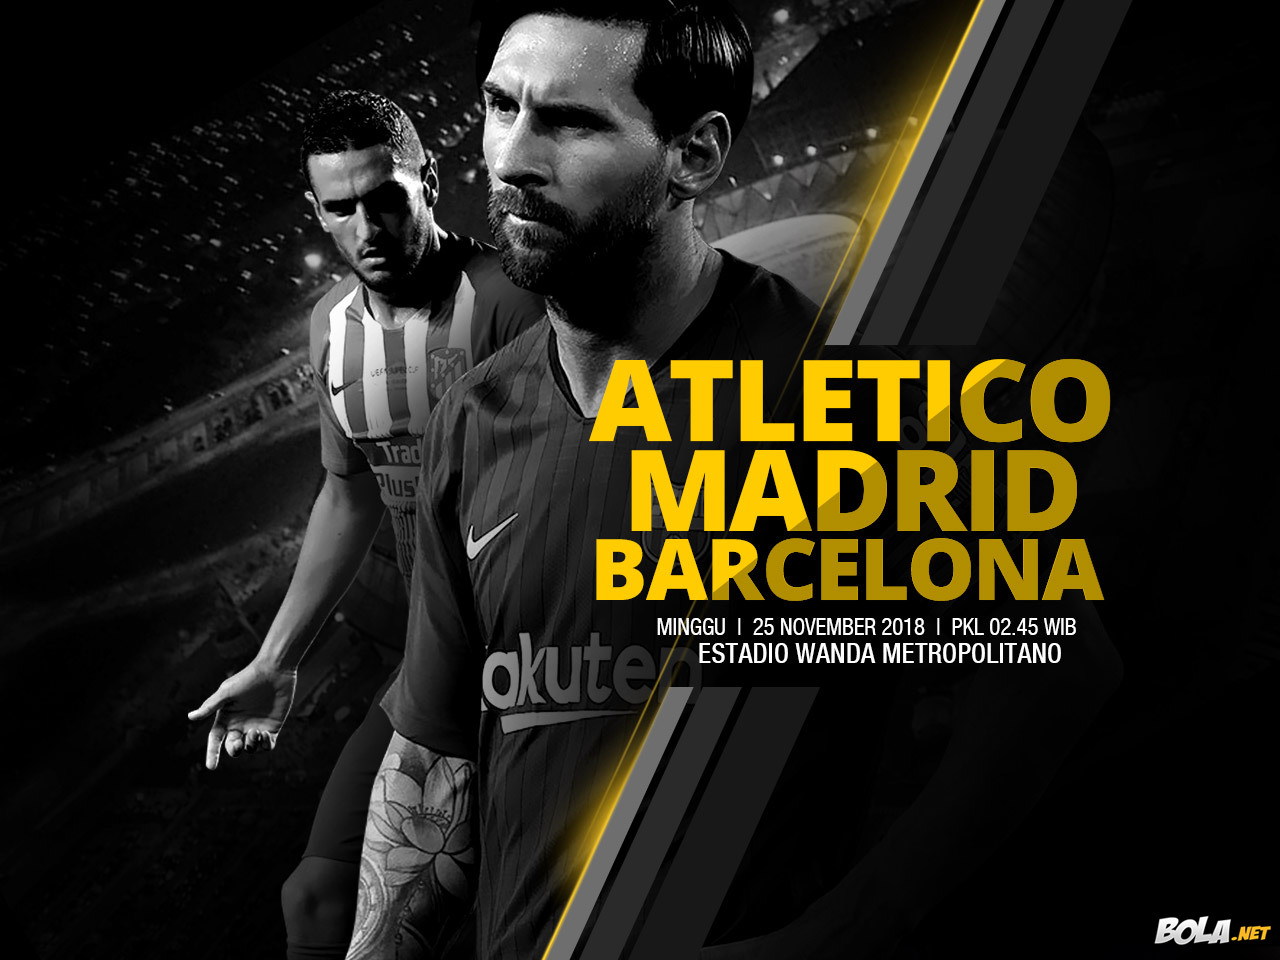 Deskripsi : Wallpaper Atletico Madrid Vs Barcelona, size: 1280x960